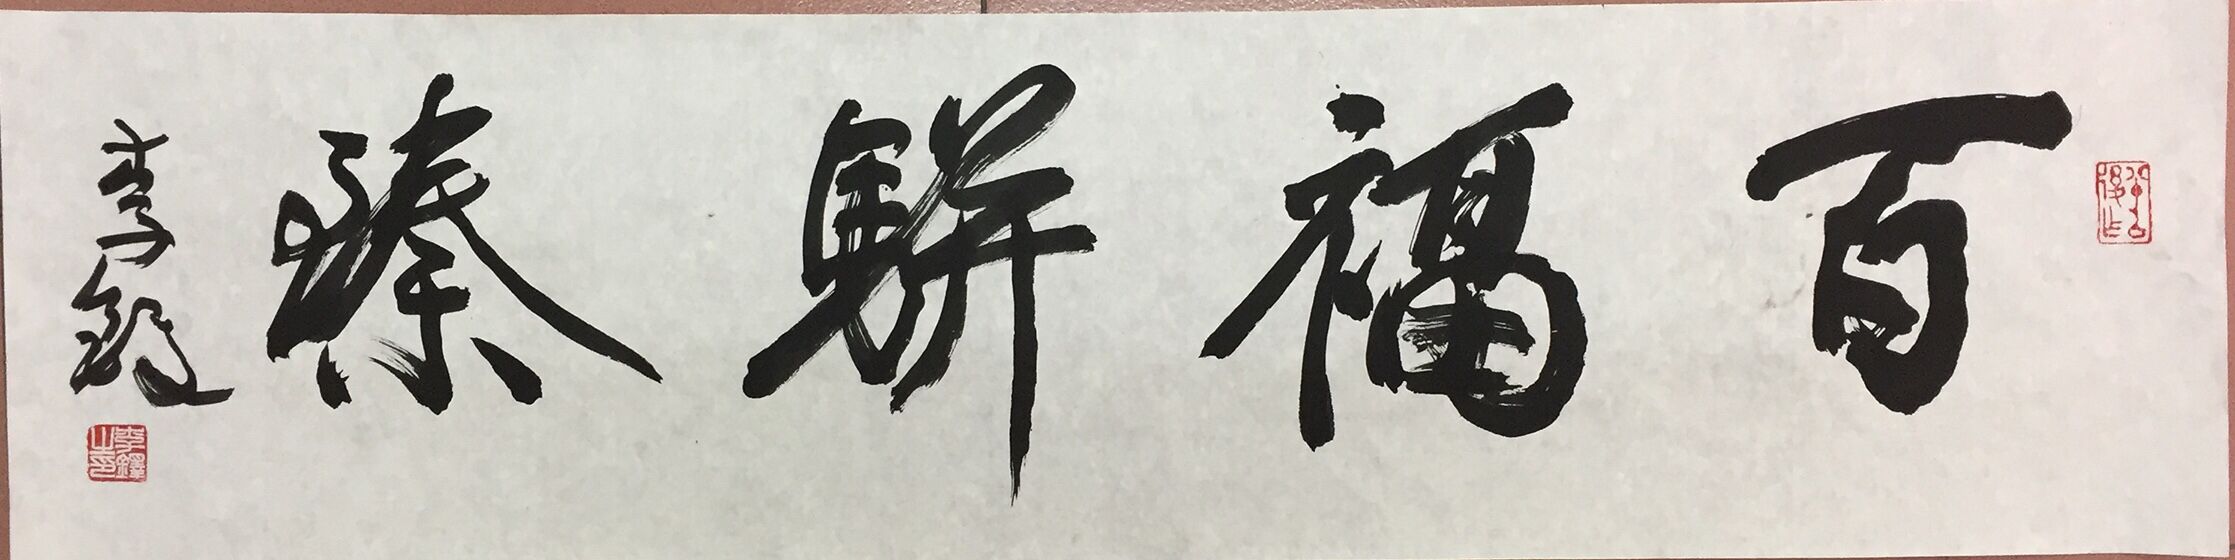 百福骈臻毛笔字图片